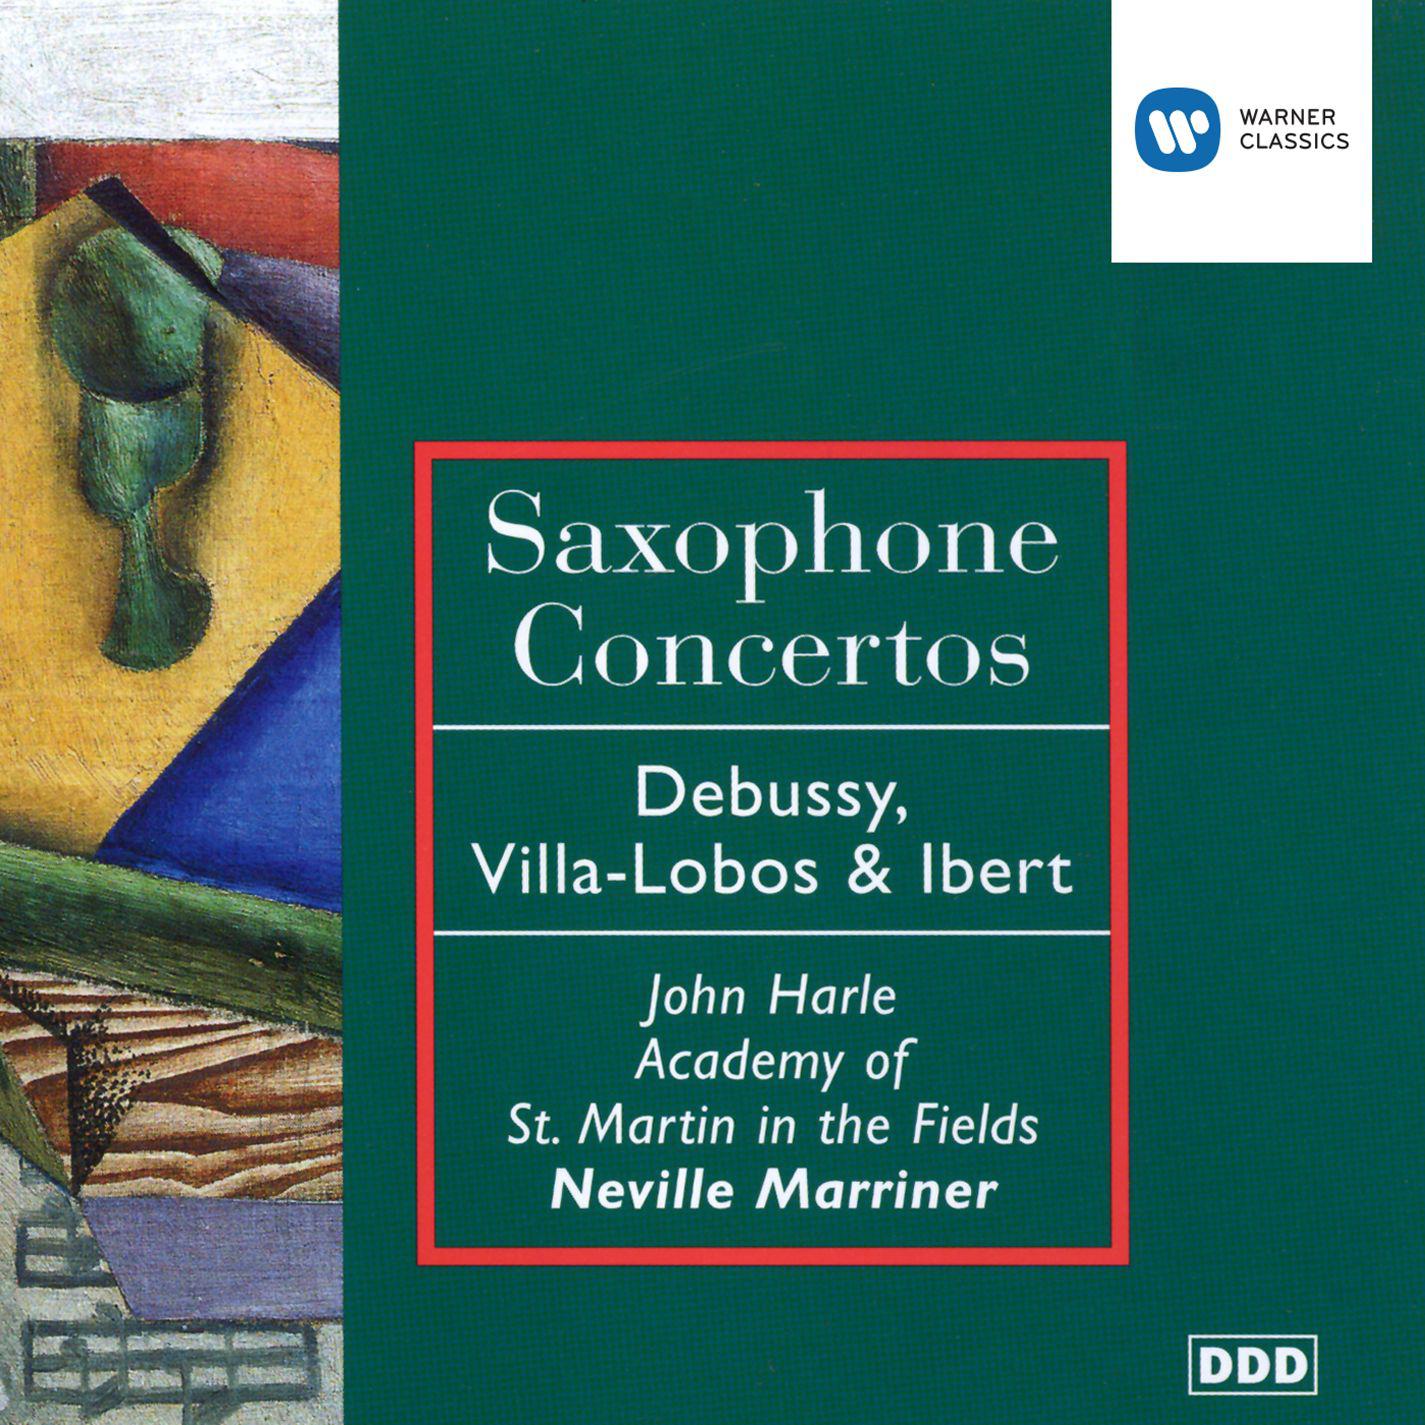 Concertino da camera for Alto Saxophone:II. Larghetto